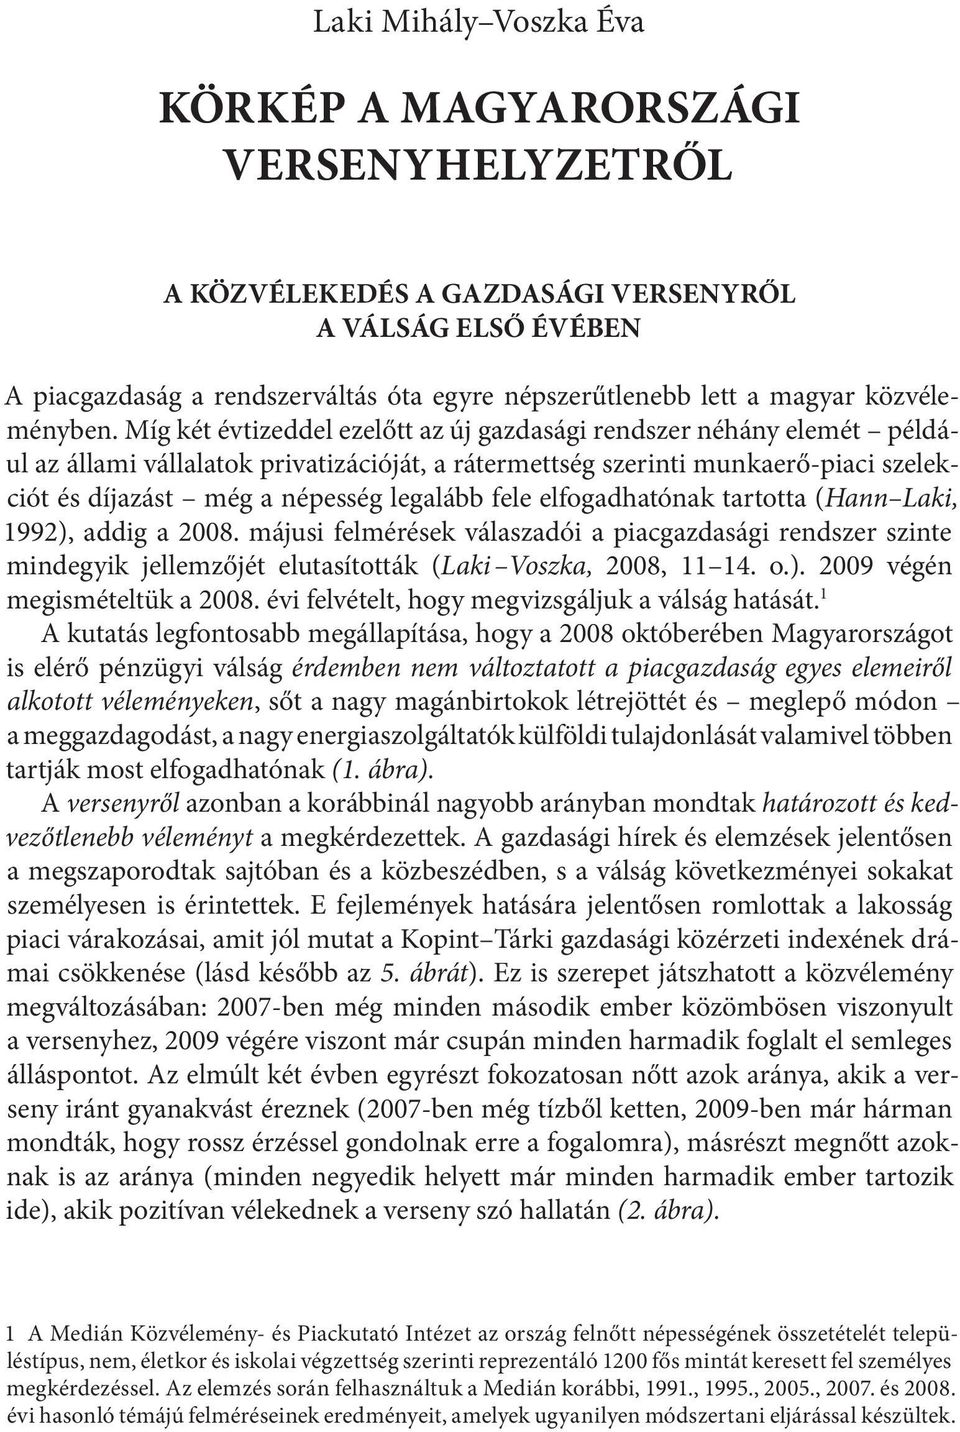 Kaleidoszkóp. Versenyhelyzet Magyarországon - PDF Ingyenes letöltés